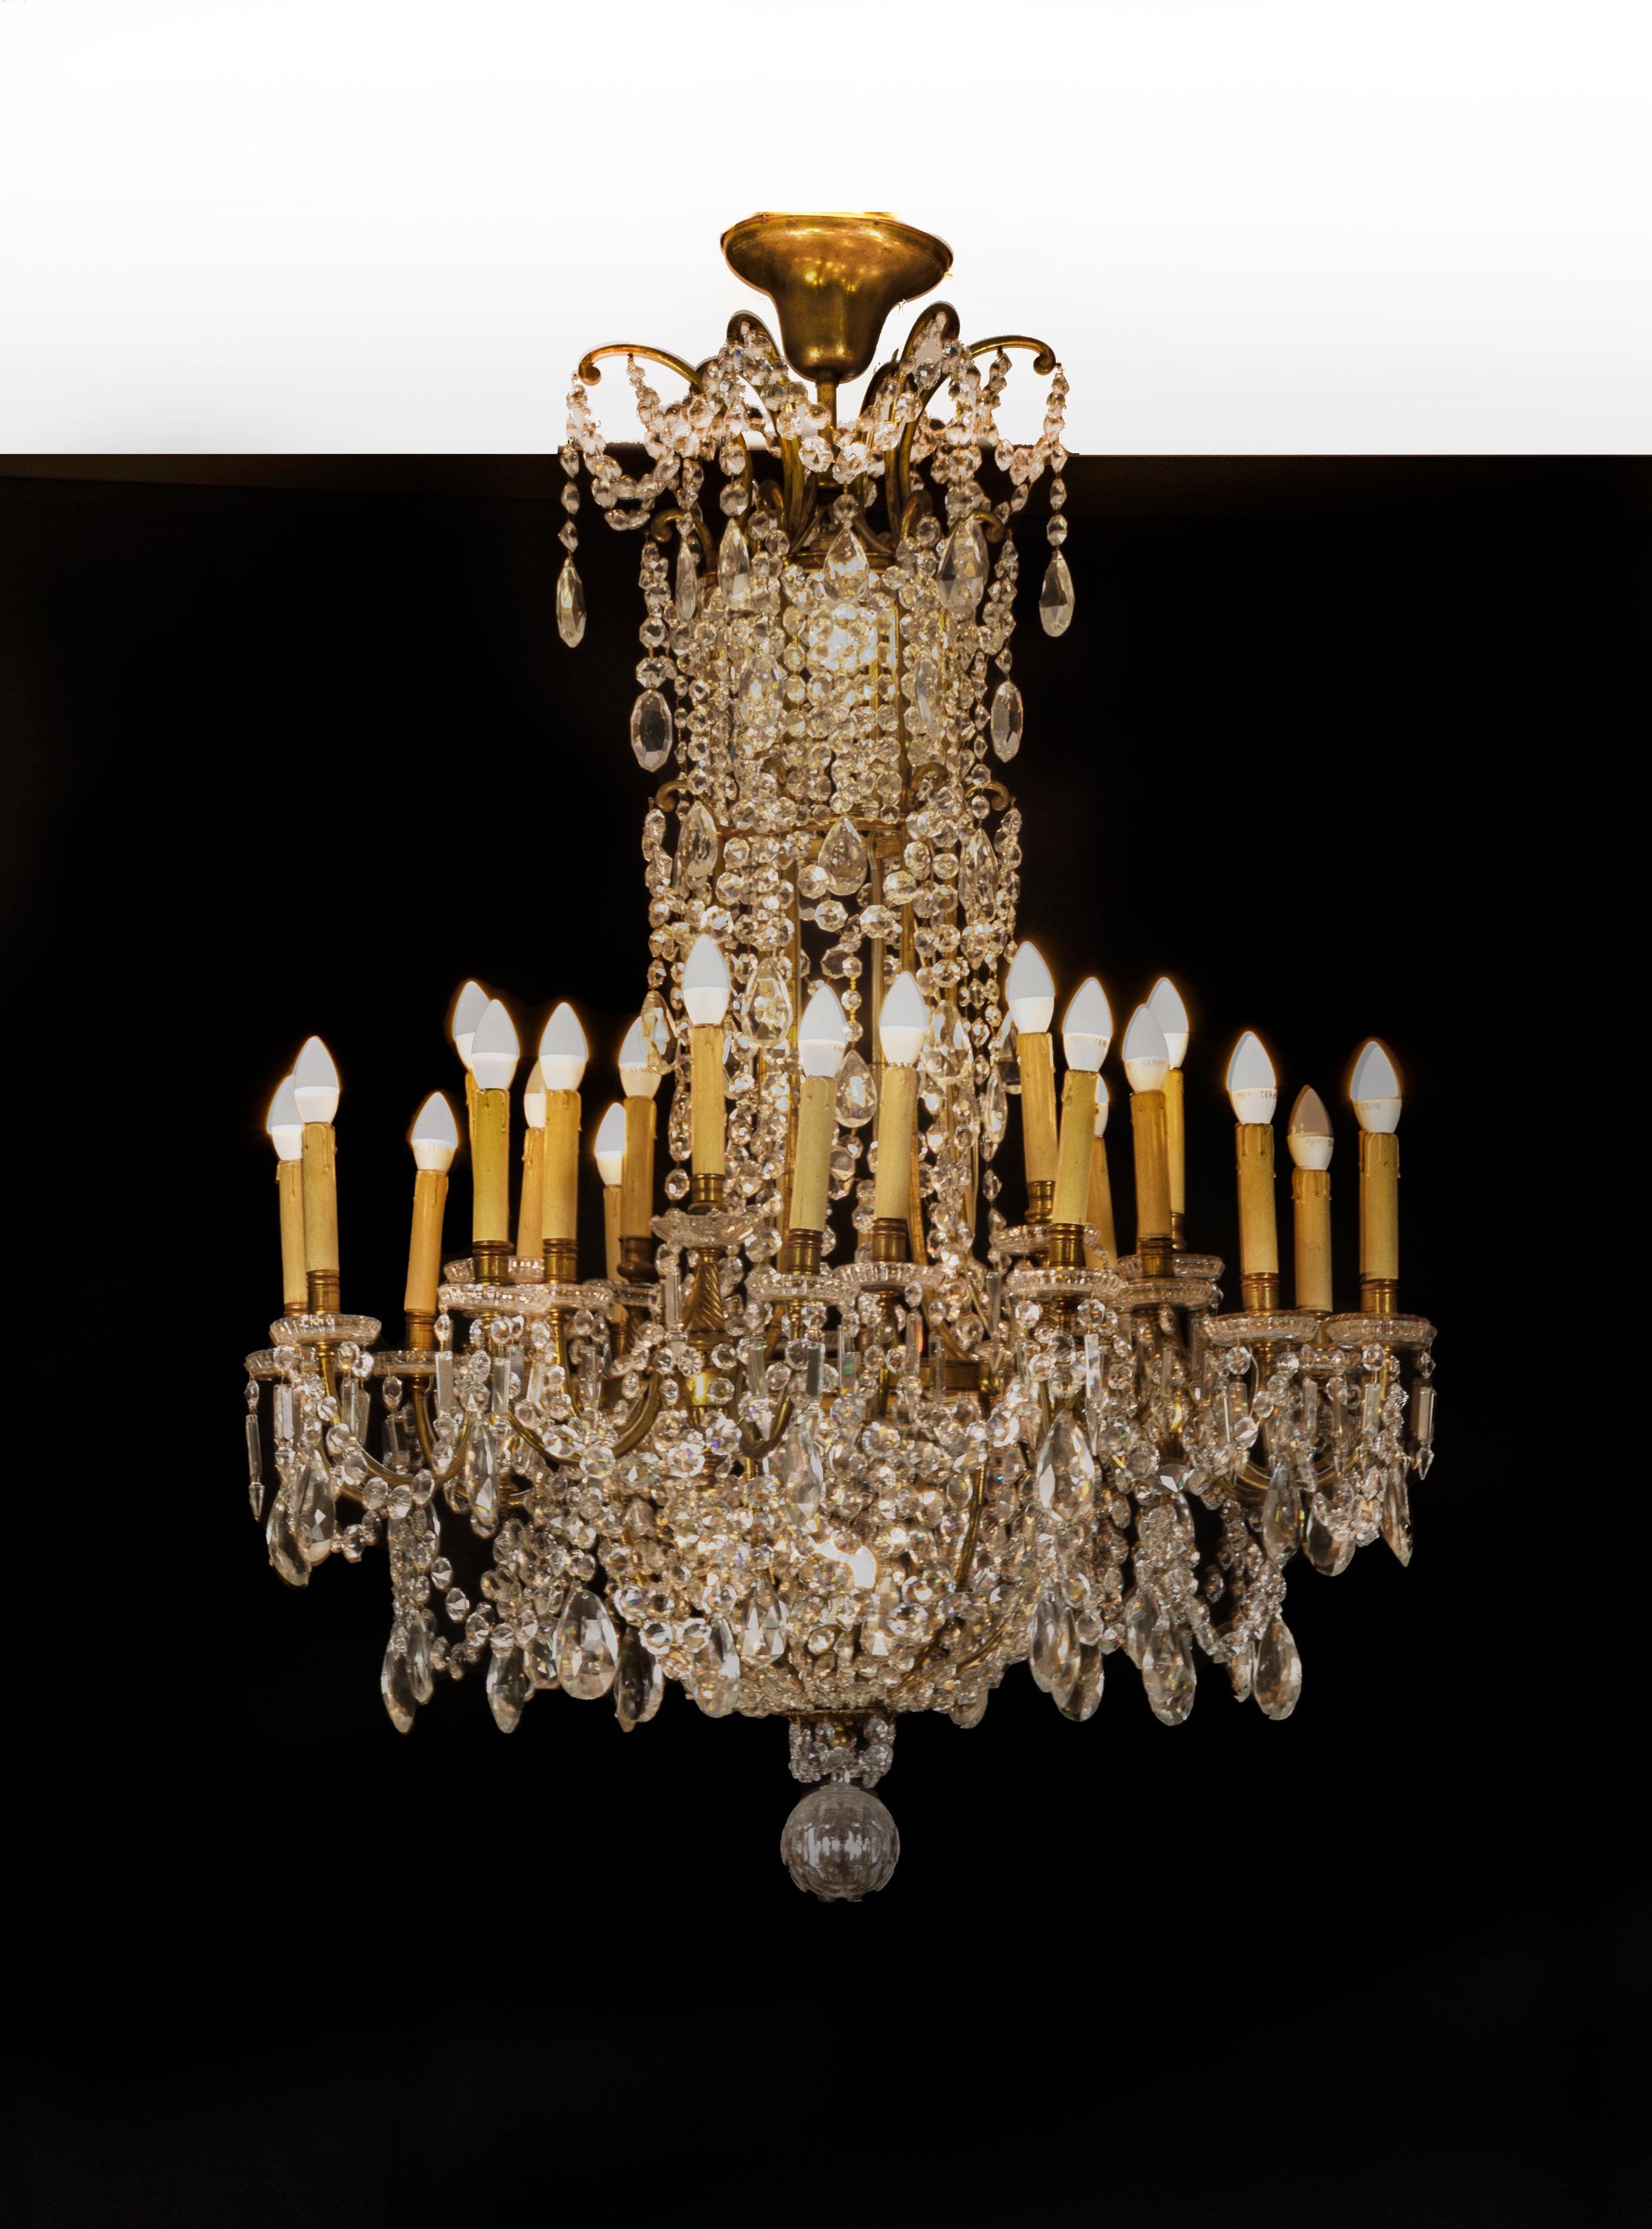 Ce lustre en cristal et bronze doré de Baccarat, aux dimensions monumentales et au design opulent, est une véritable splendeur avec ses 24 lumières, qui se distinguent par les gouttes de cristal surdimensionnées, suspendues aux branches en bronze